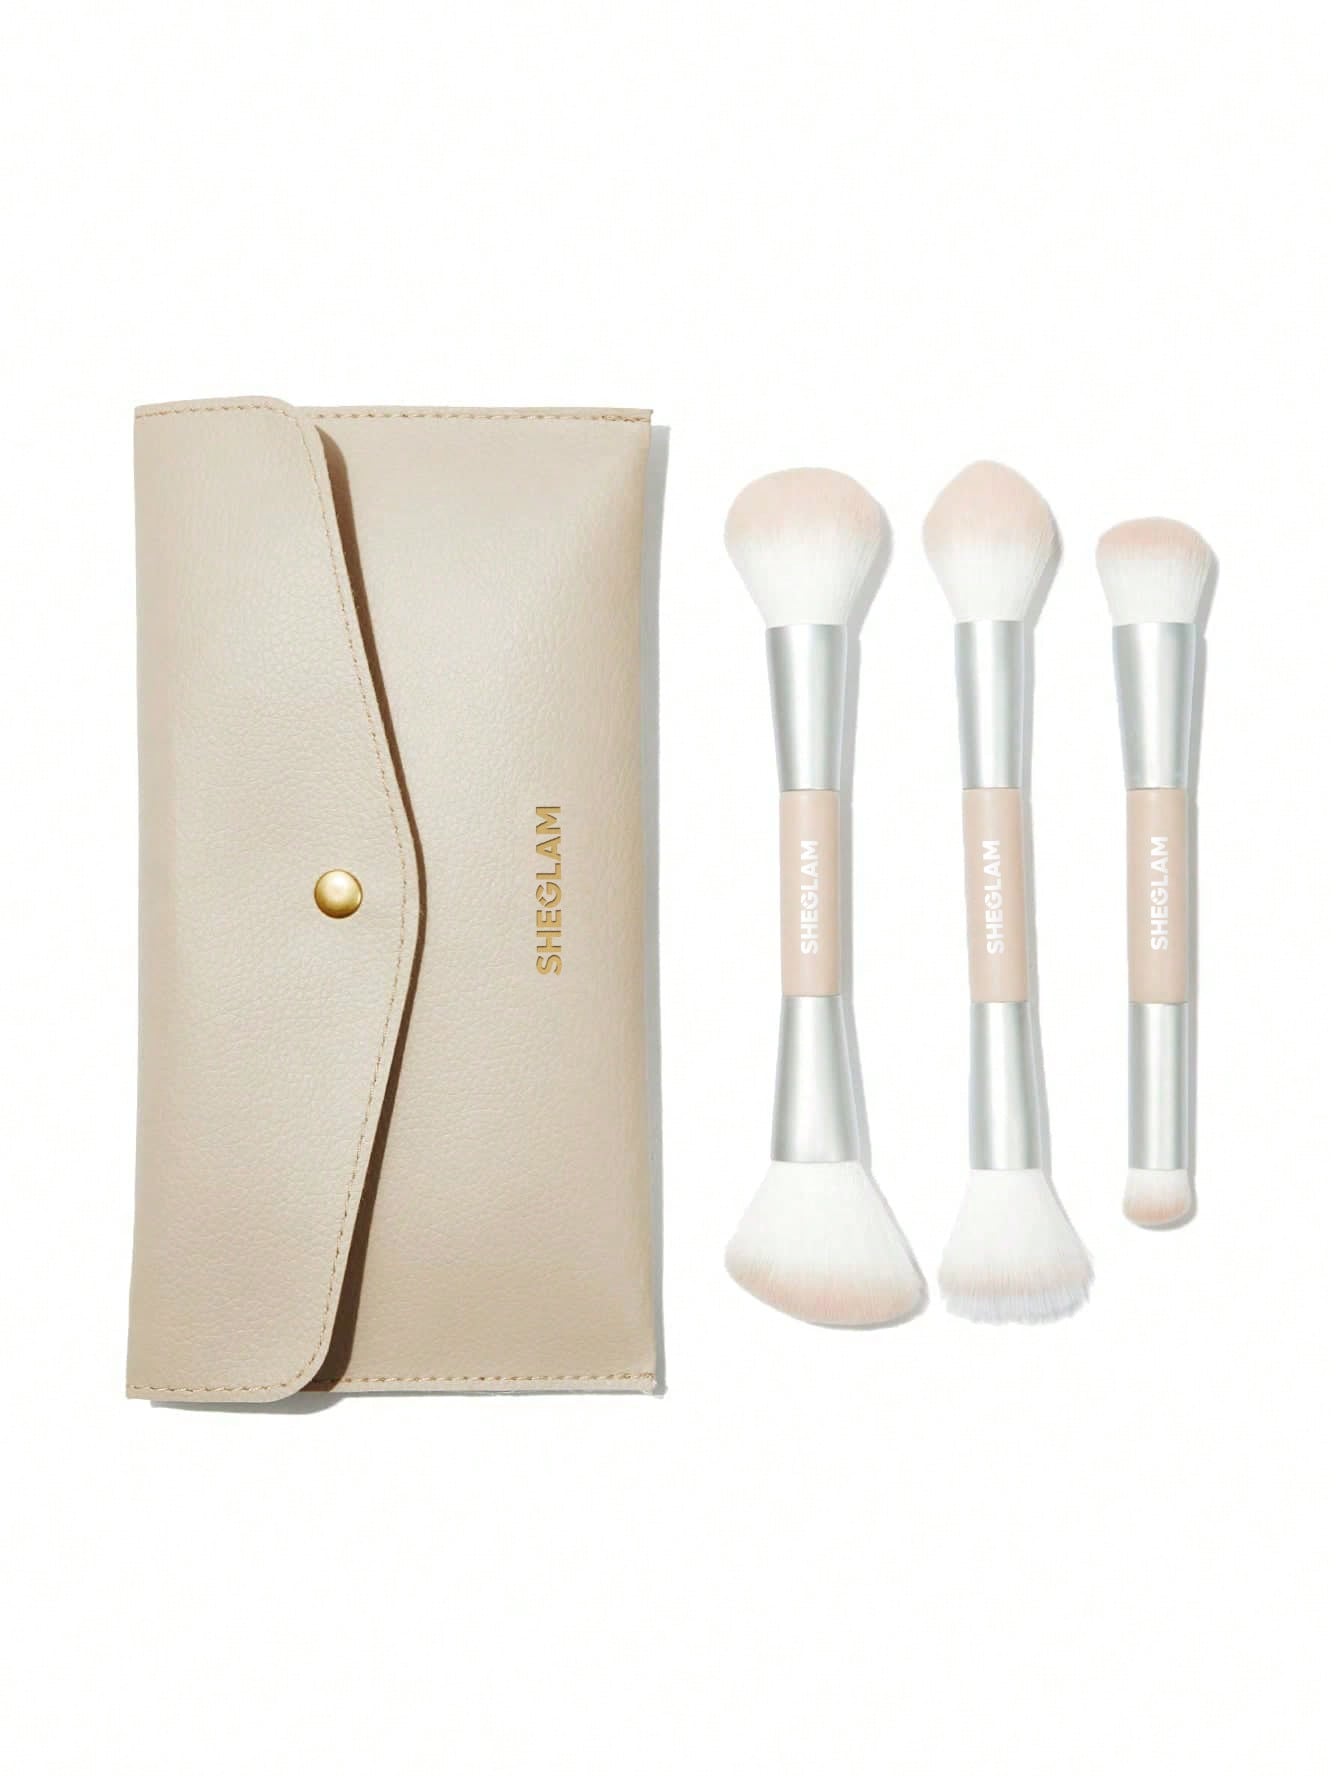 SHEGLAM Glam 101 Face Essentials Brush Set With Bag - Negative Apparel